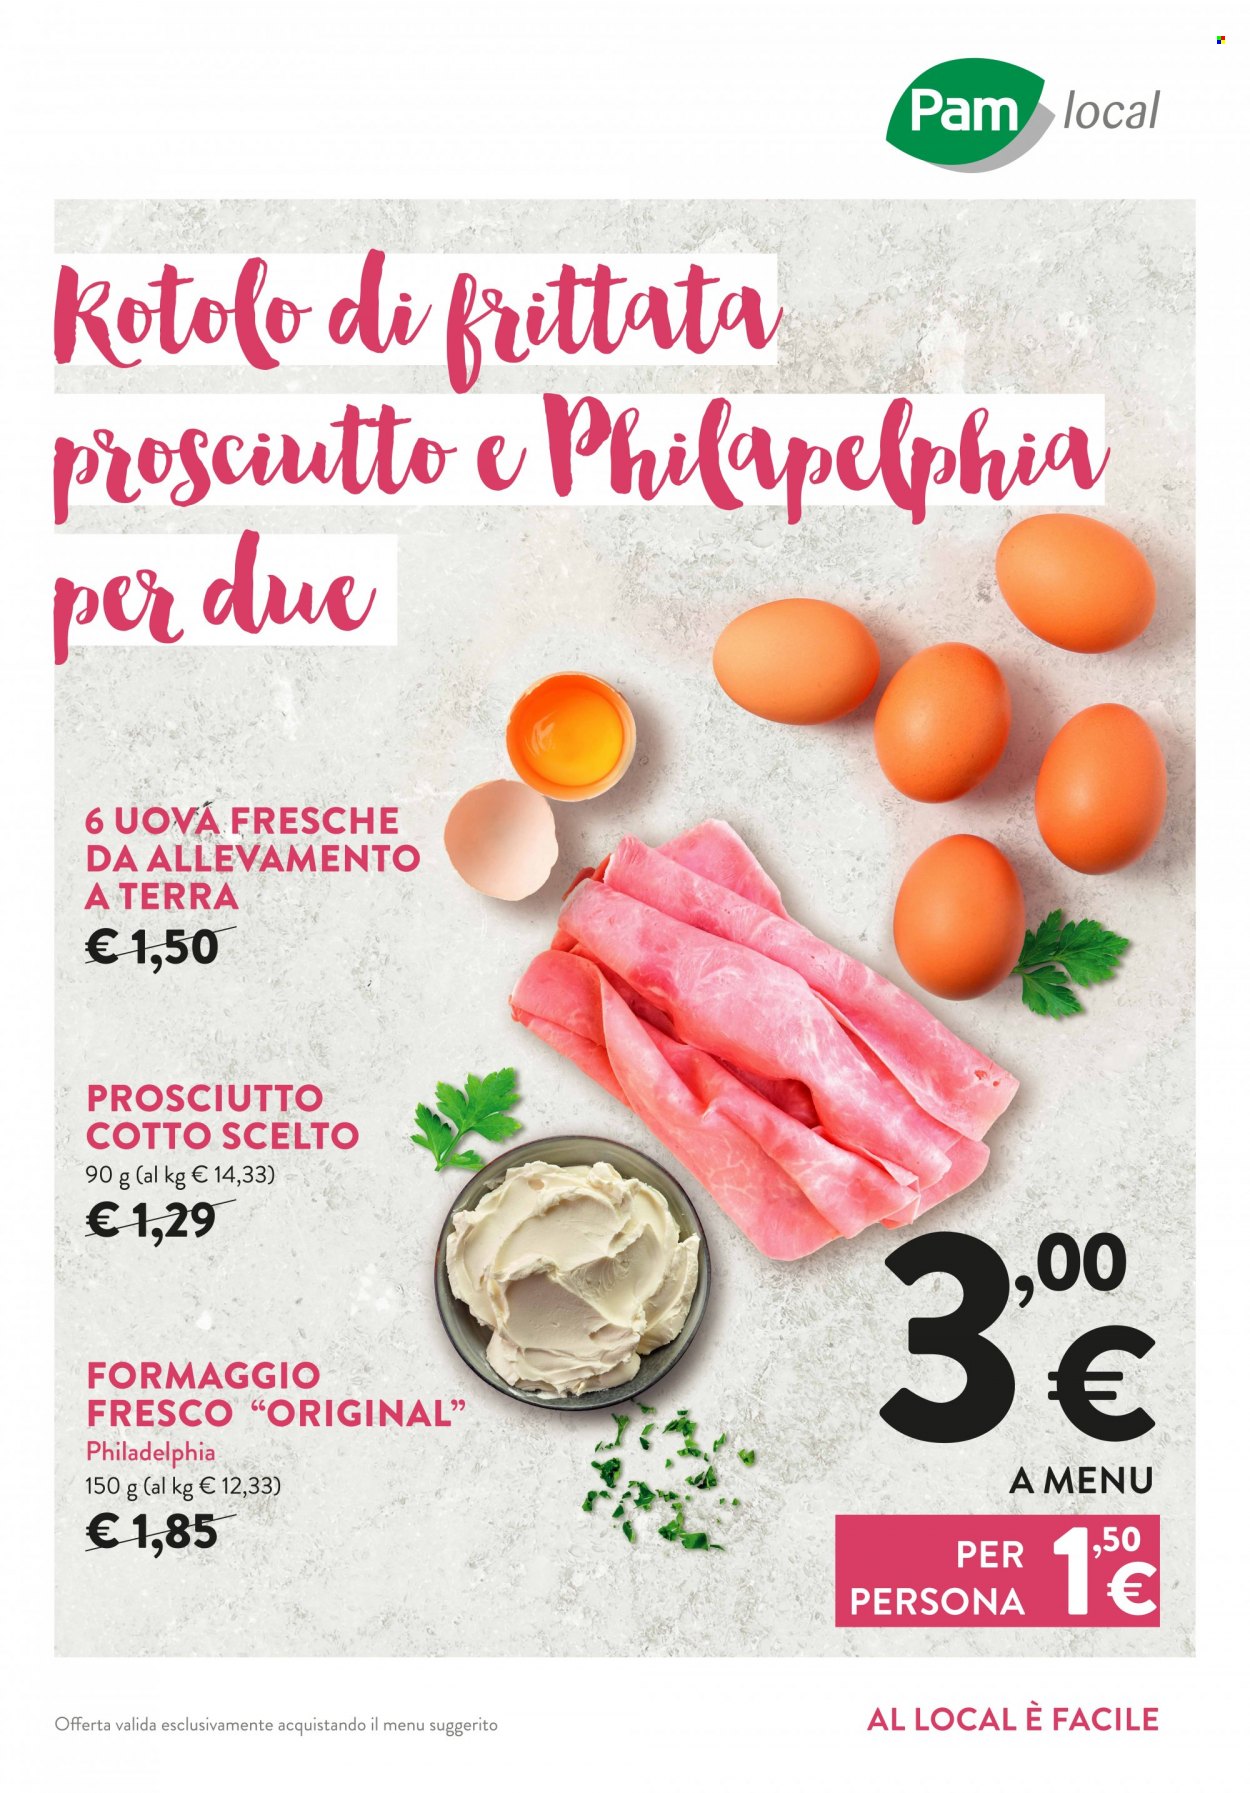 thumbnail - Volantino Pam local - Prodotti in offerta - prosciutto cotto, formaggio, Philadelphia, formaggio fresco, uova. Pagina 1.